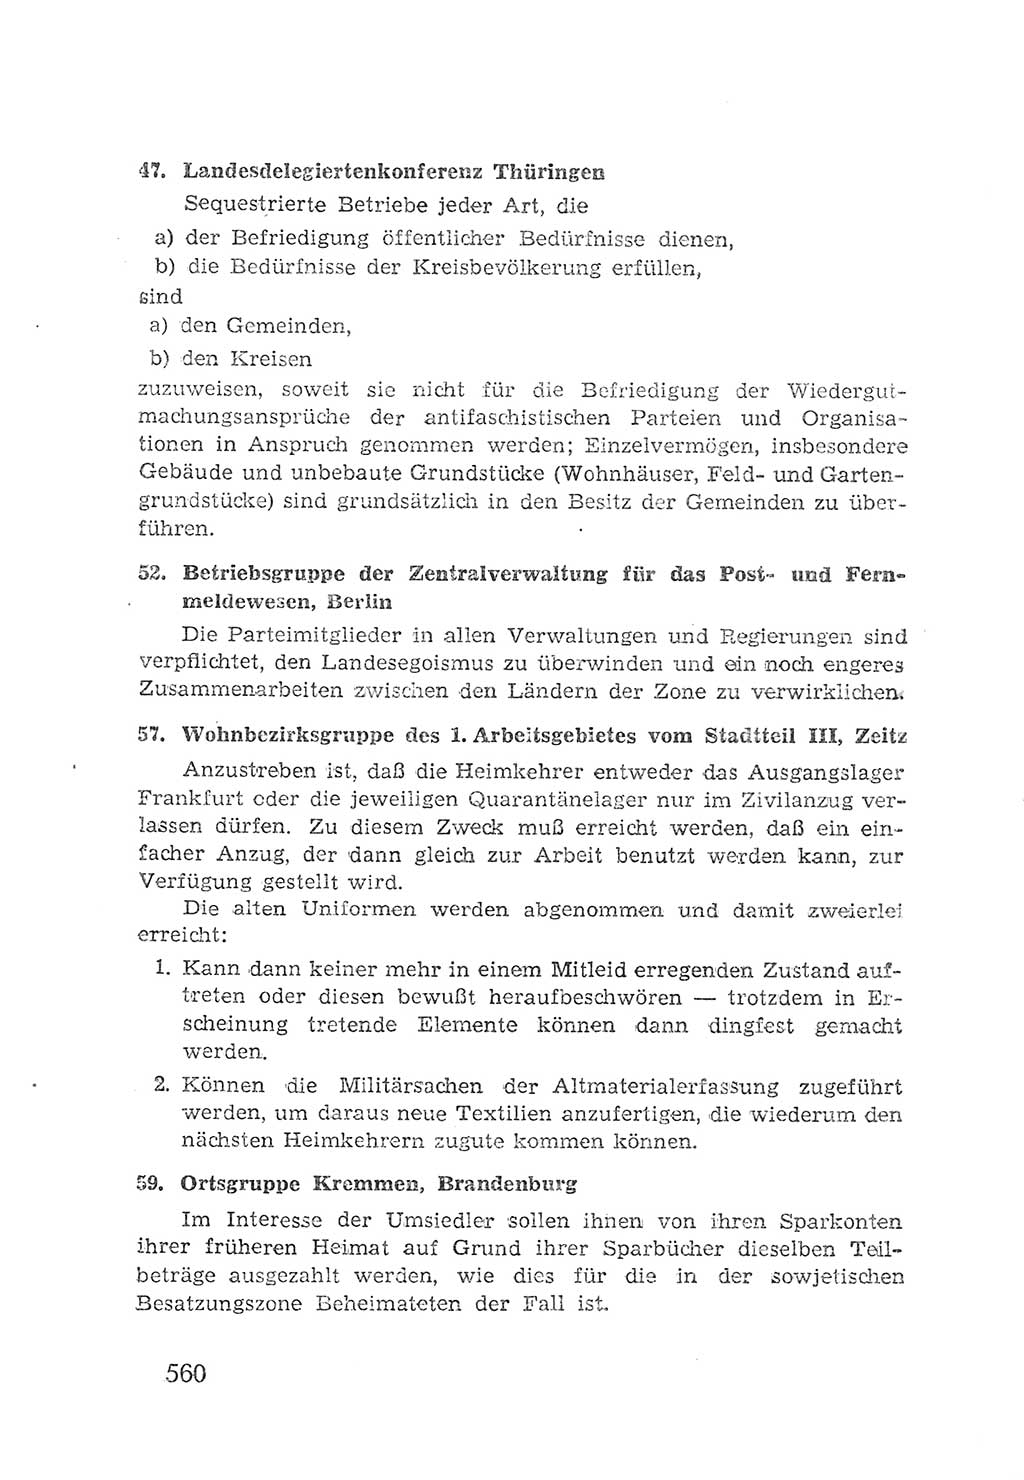 Protokoll der Verhandlungen des 2. Parteitages der Sozialistischen Einheitspartei Deutschlands (SED) [Sowjetische Besatzungszone (SBZ) Deutschlands] 1947, Seite 560 (Prot. Verh. 2. PT SED SBZ Dtl. 1947, S. 560)